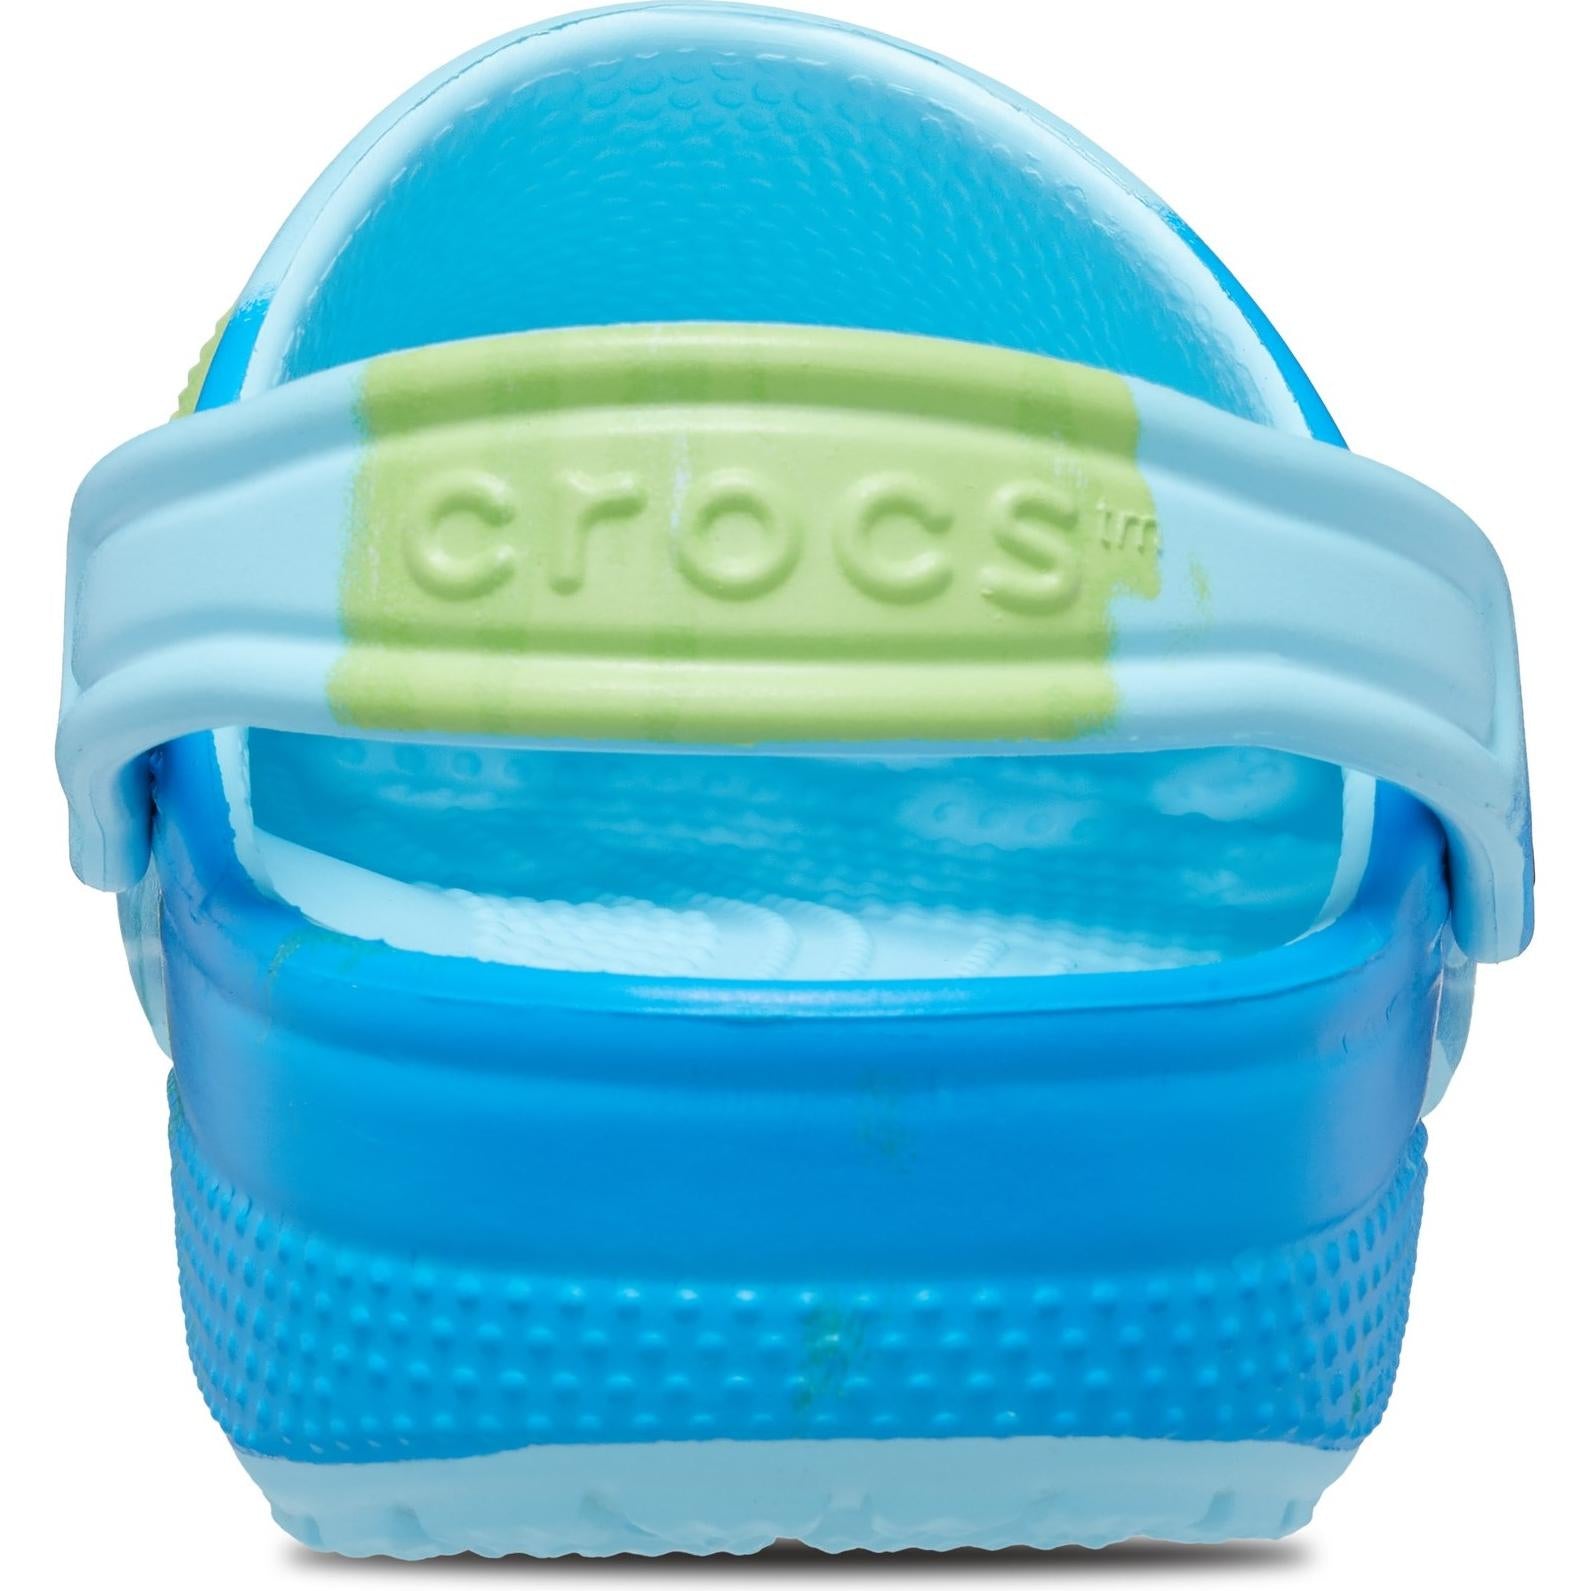 Crocs Classic Ombre Clog Shoes